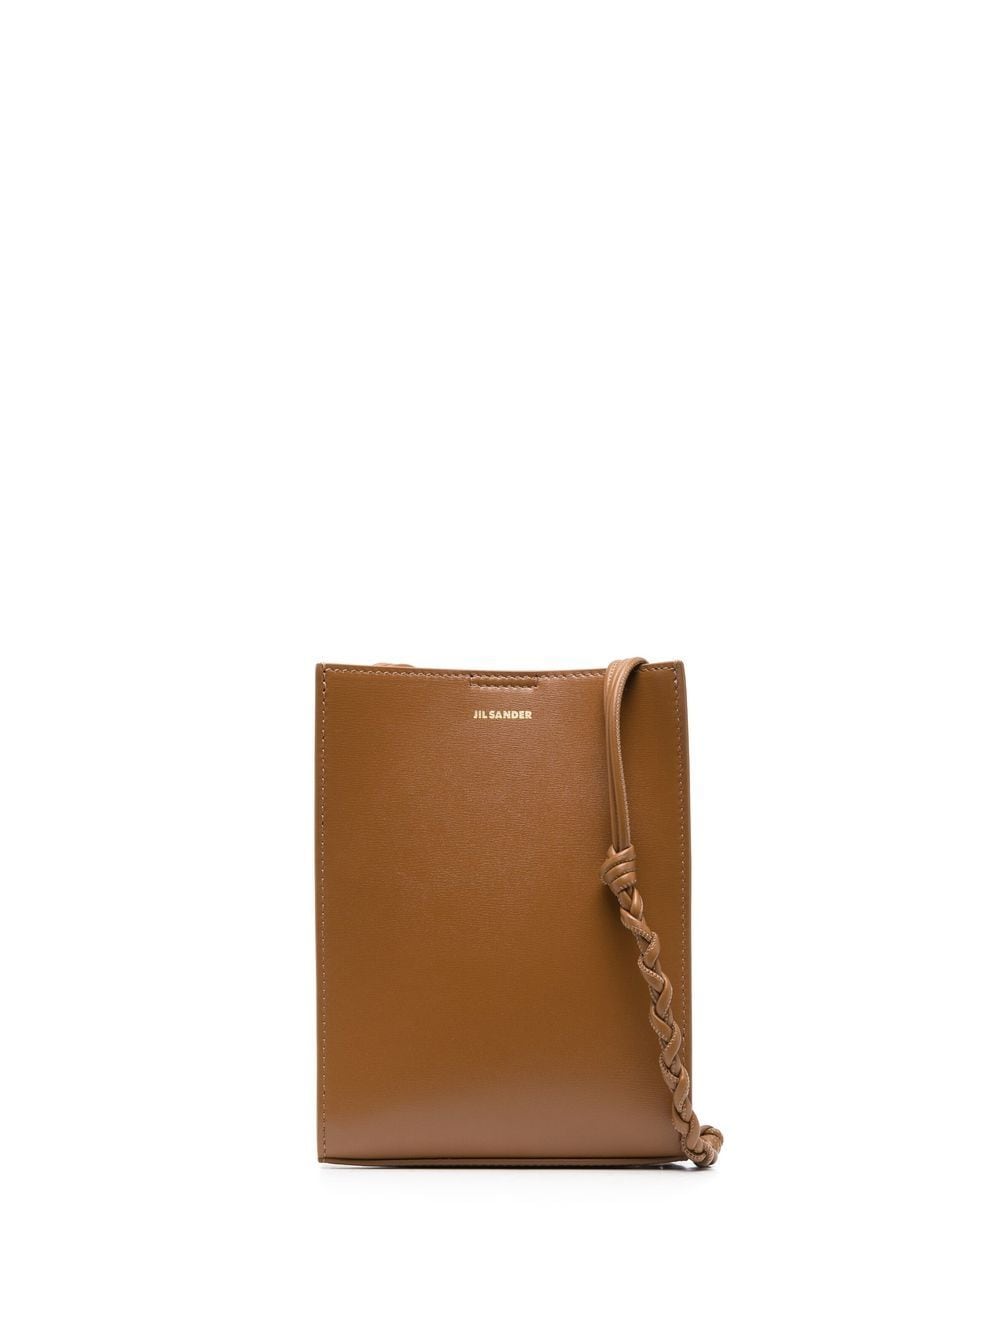 Jil Sander, Leather Small Tangle Shoulder Bag